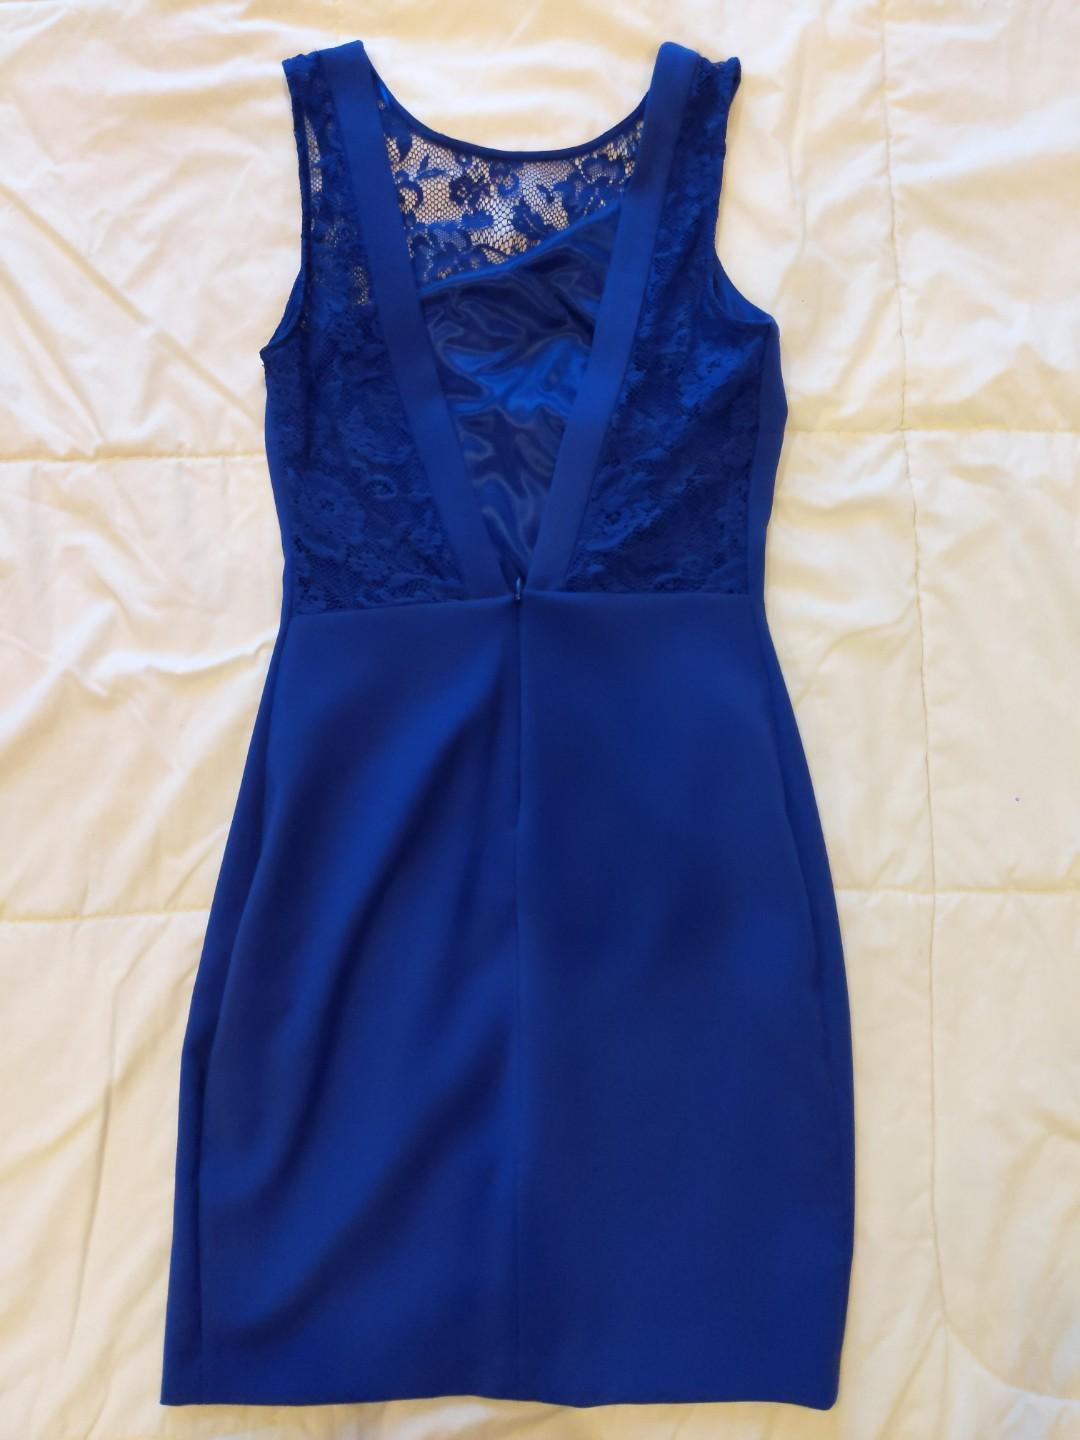 zara blue dress 2019